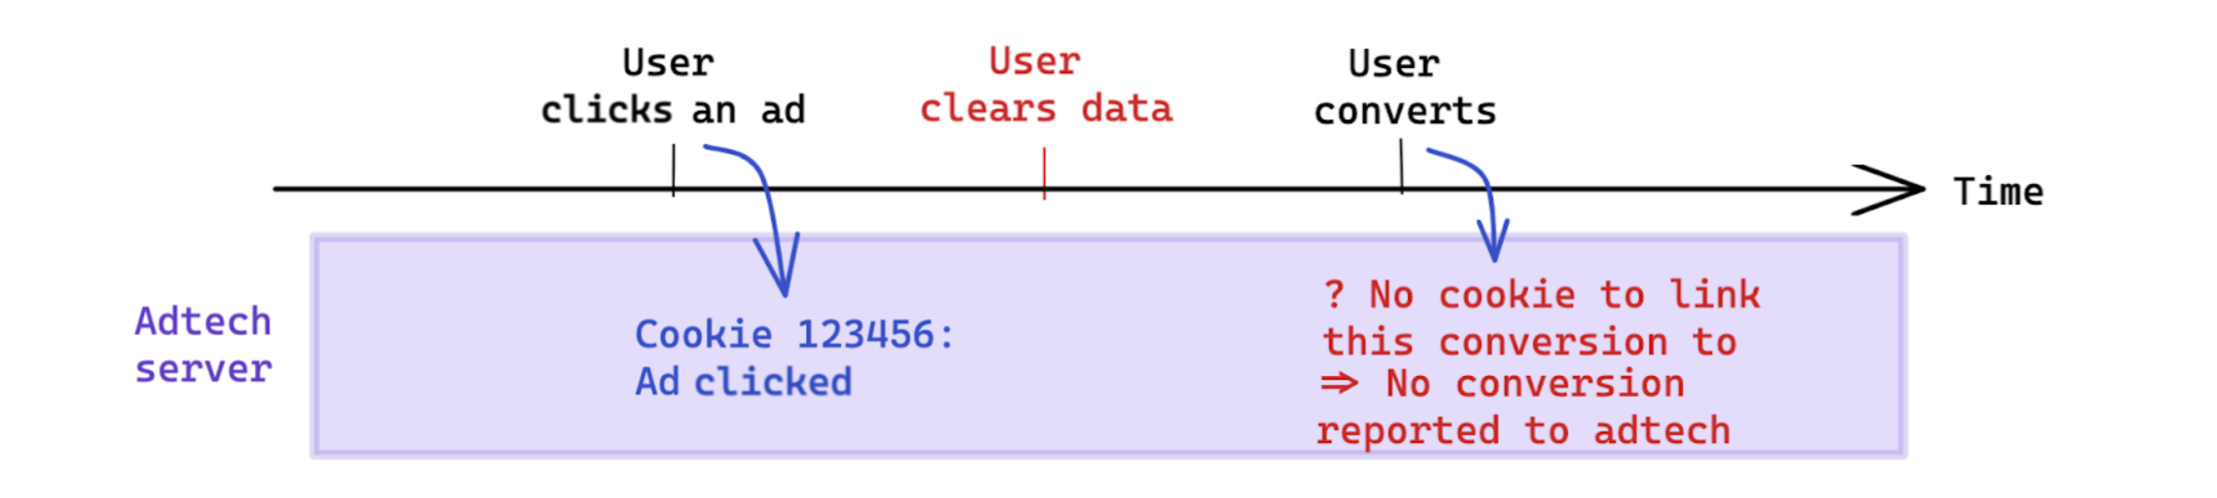 La cancellazione dei dati avviata dall&#39;utente prima di una conversione influisce sulla misurazione basata sui cookie.